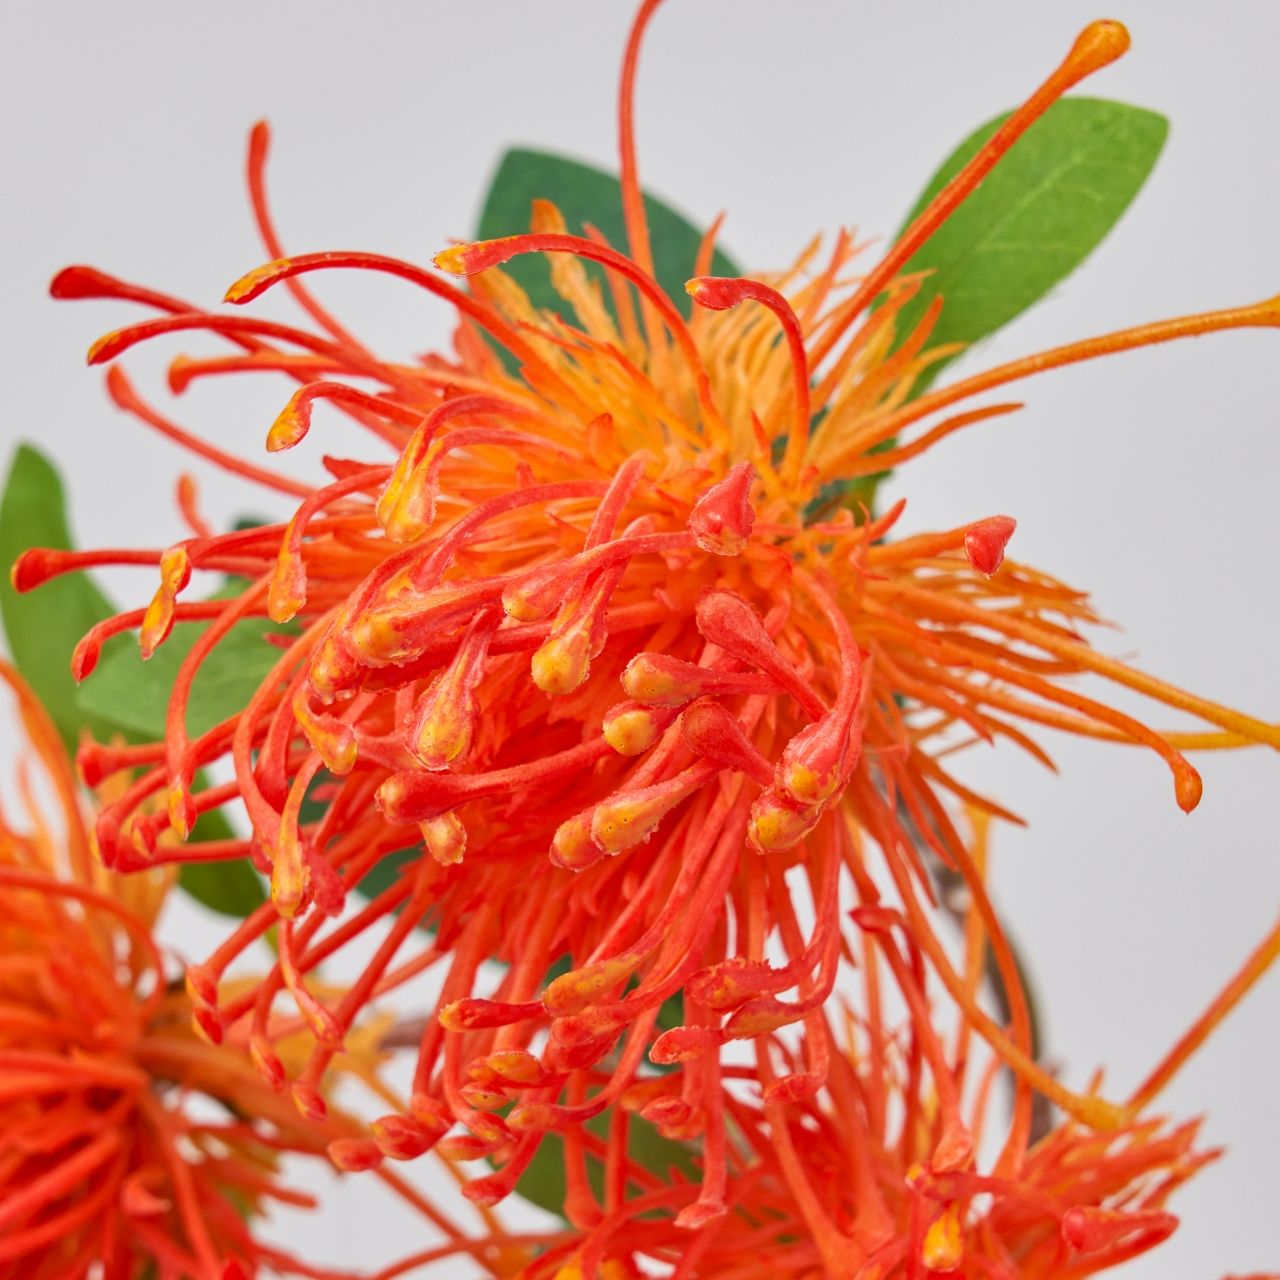 マイフラ 通販 Magiq ワイルドピンクッション オレンジ アーティフィシャルフラワー 造花 Fm ワイルドフラワー オレンジ Magiq アーティフィシャルフラワー 造花 全国にmagiq 花器 花資材などをお届けします